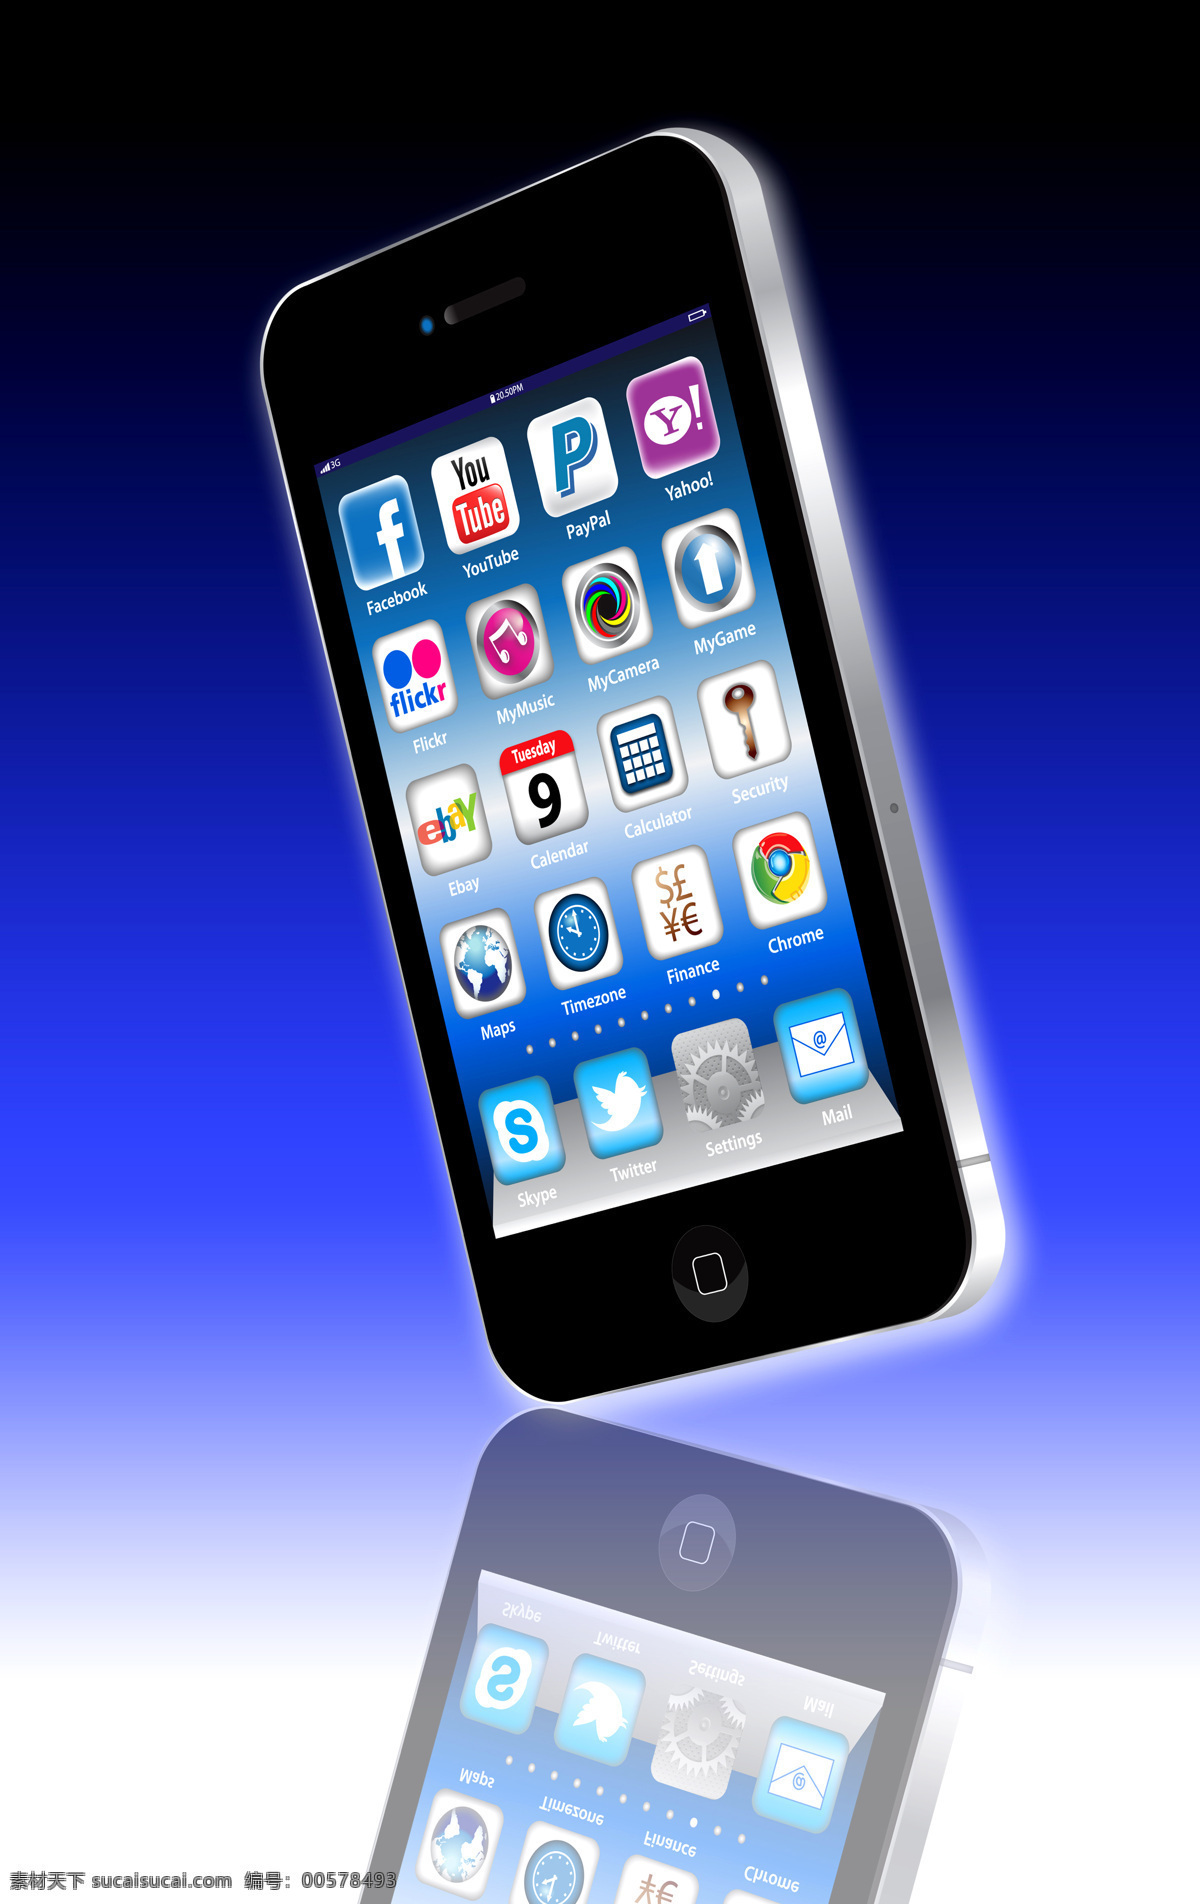 iphone 4s 手机 科技 现代 iphone4s 高科技 通讯工具 黑色 手机图片 现代科技